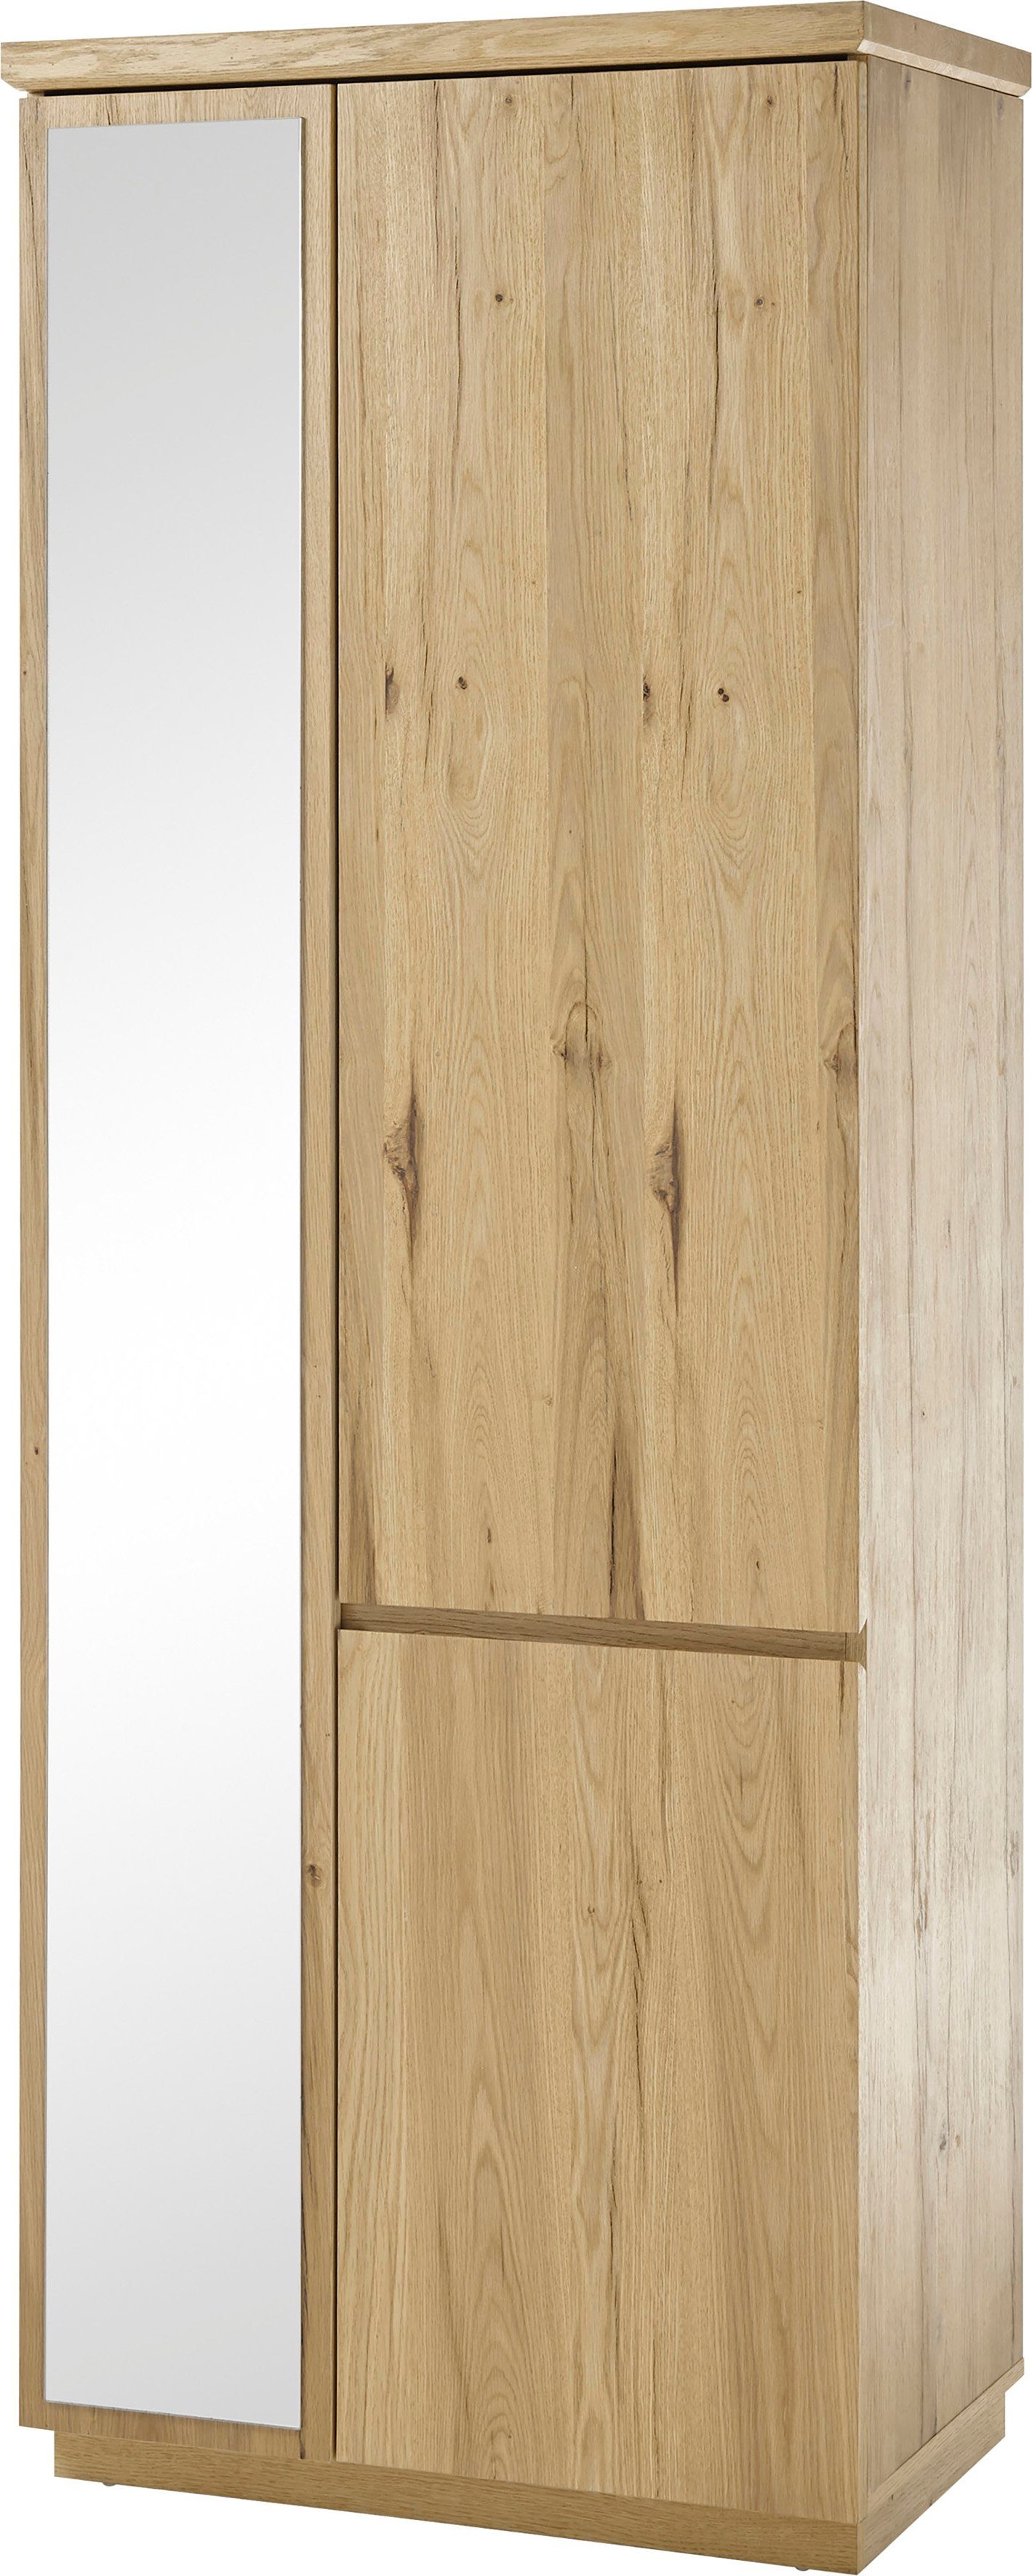 MCA furniture Garderobenschrank Yorkshire Breite ca. 75 cm | Garderobenschränke